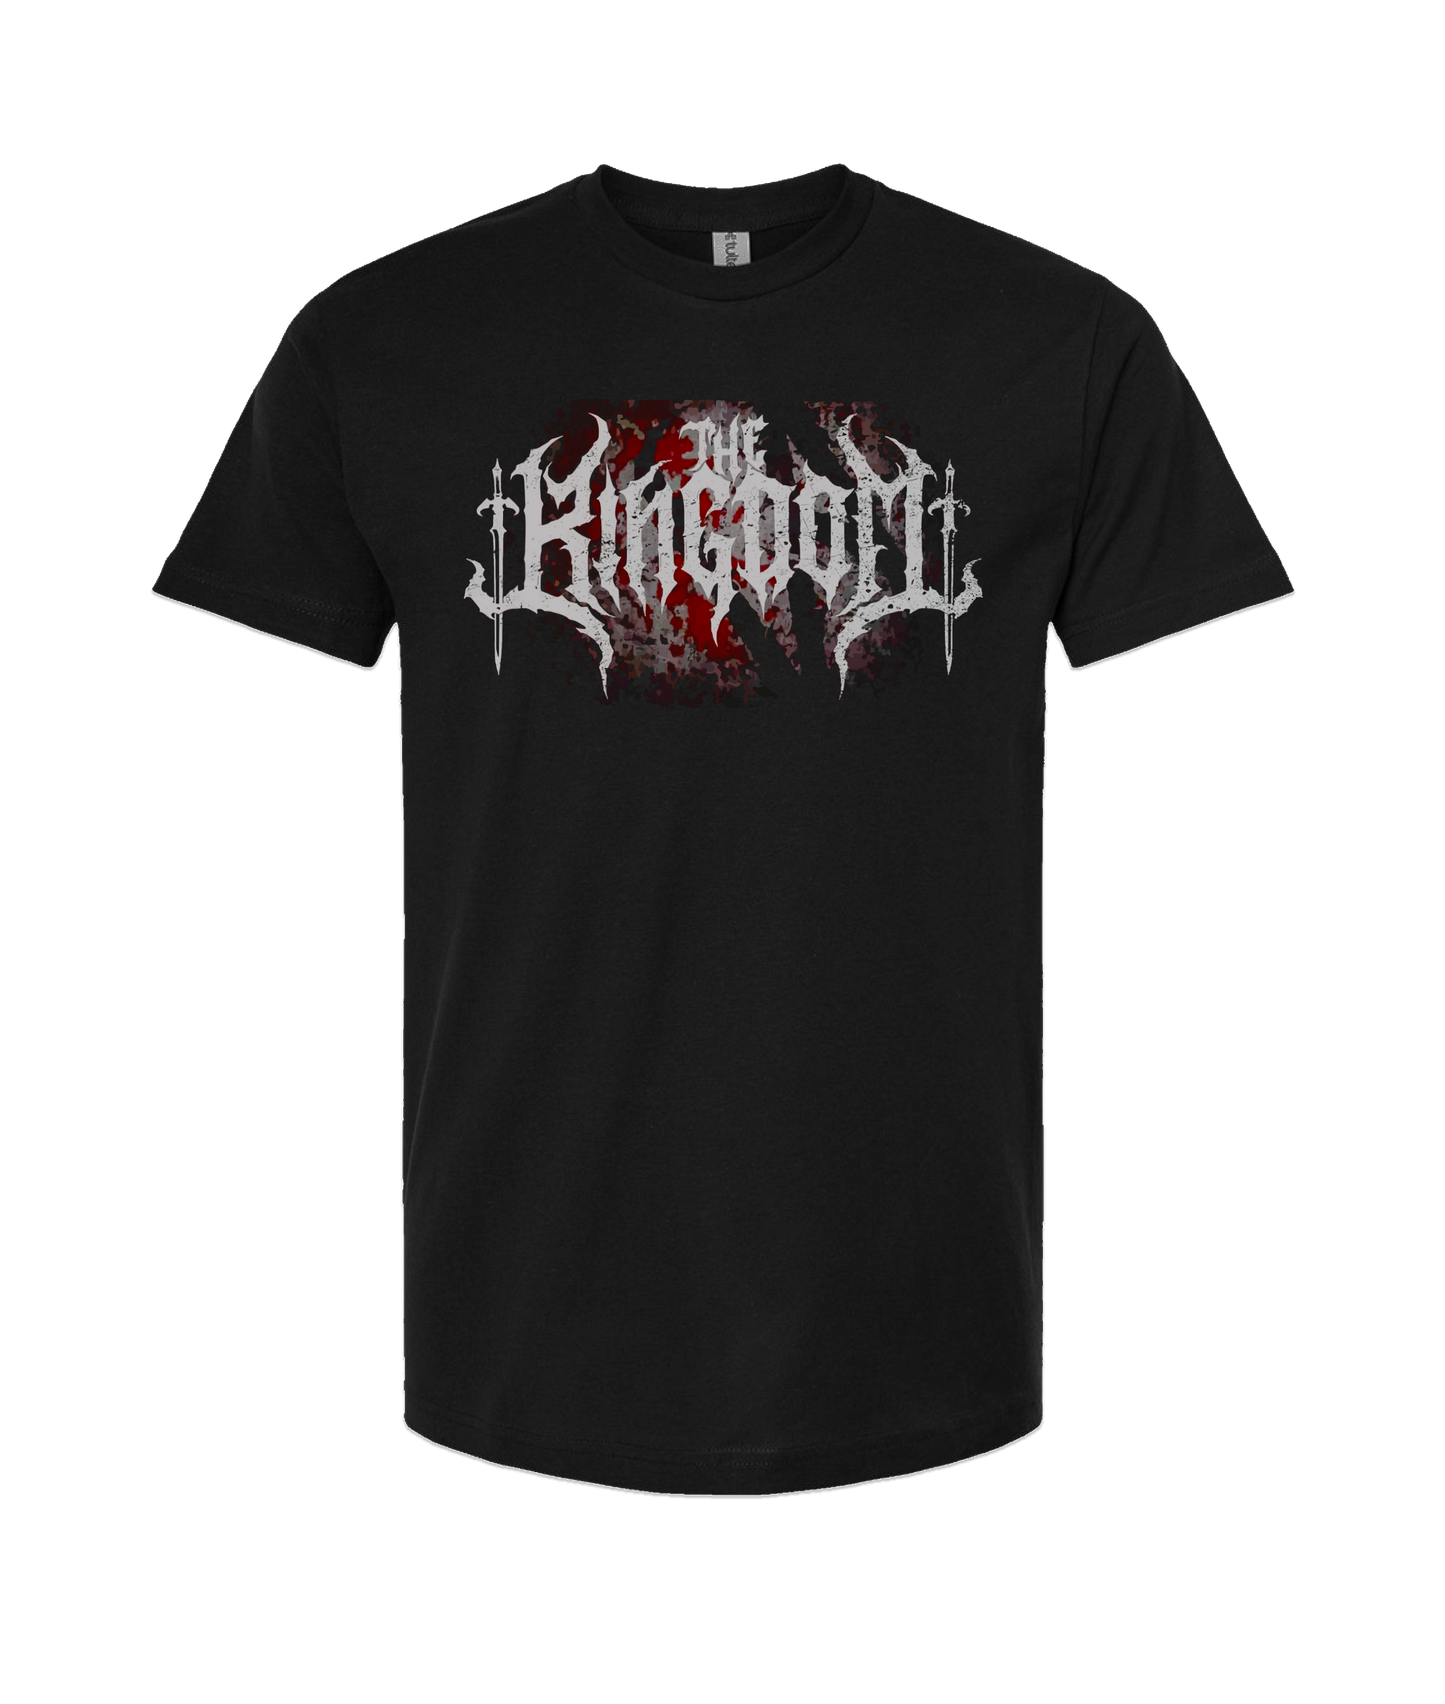 The Kingdom - Dark Logo - Black T-Shirt